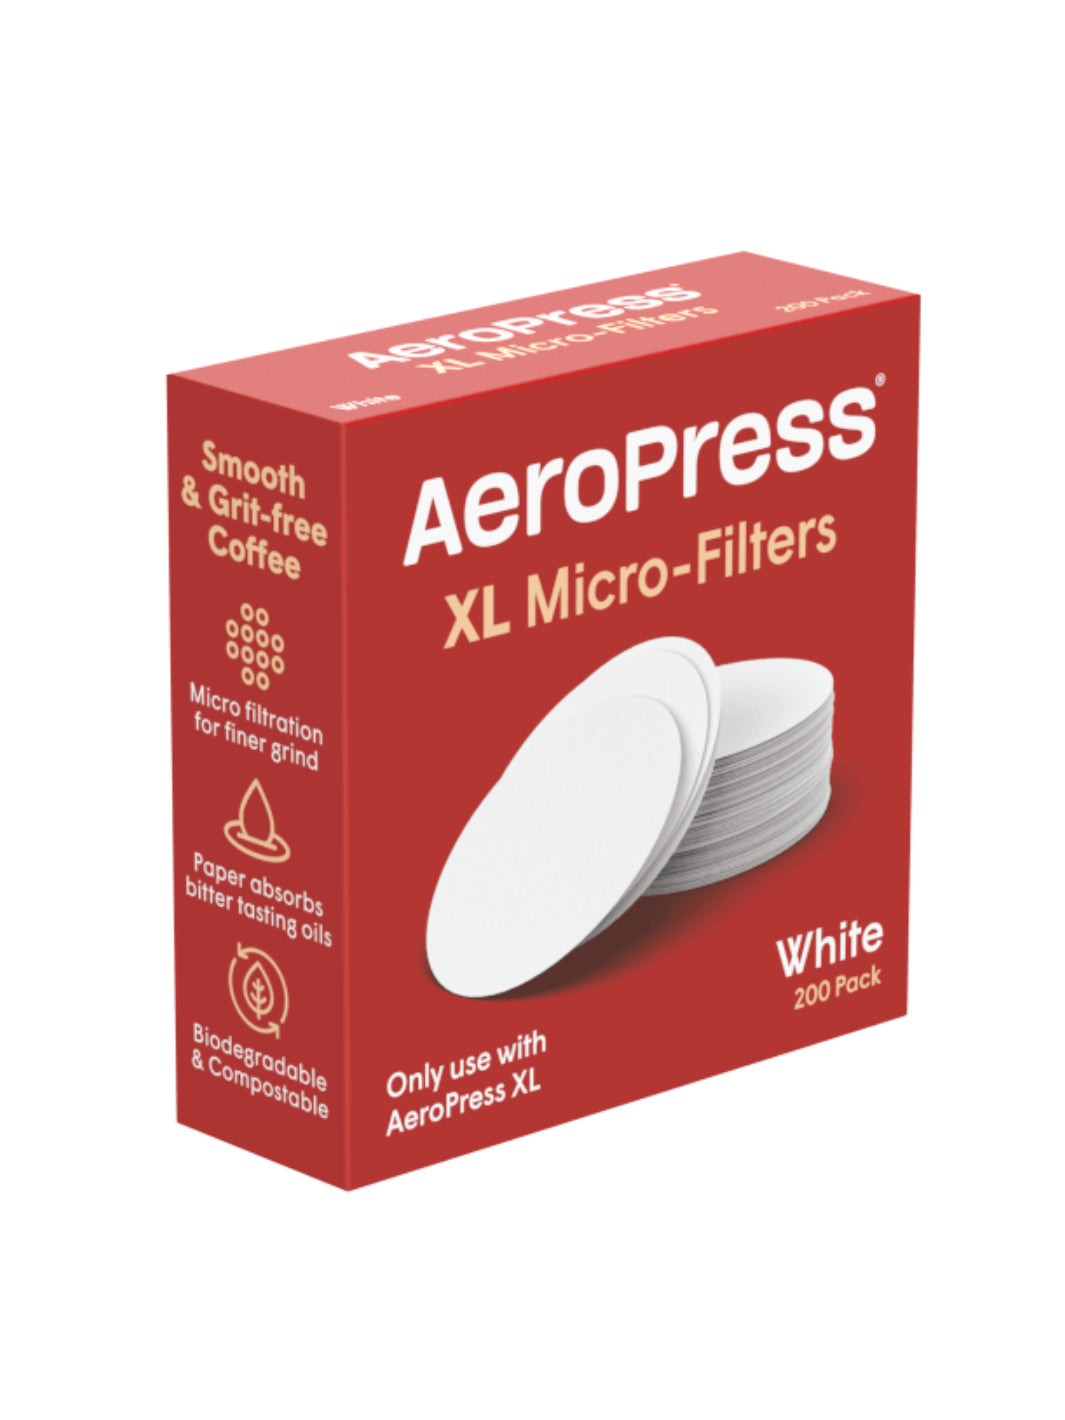 AeroPress XL Microfilters (200-Pack)